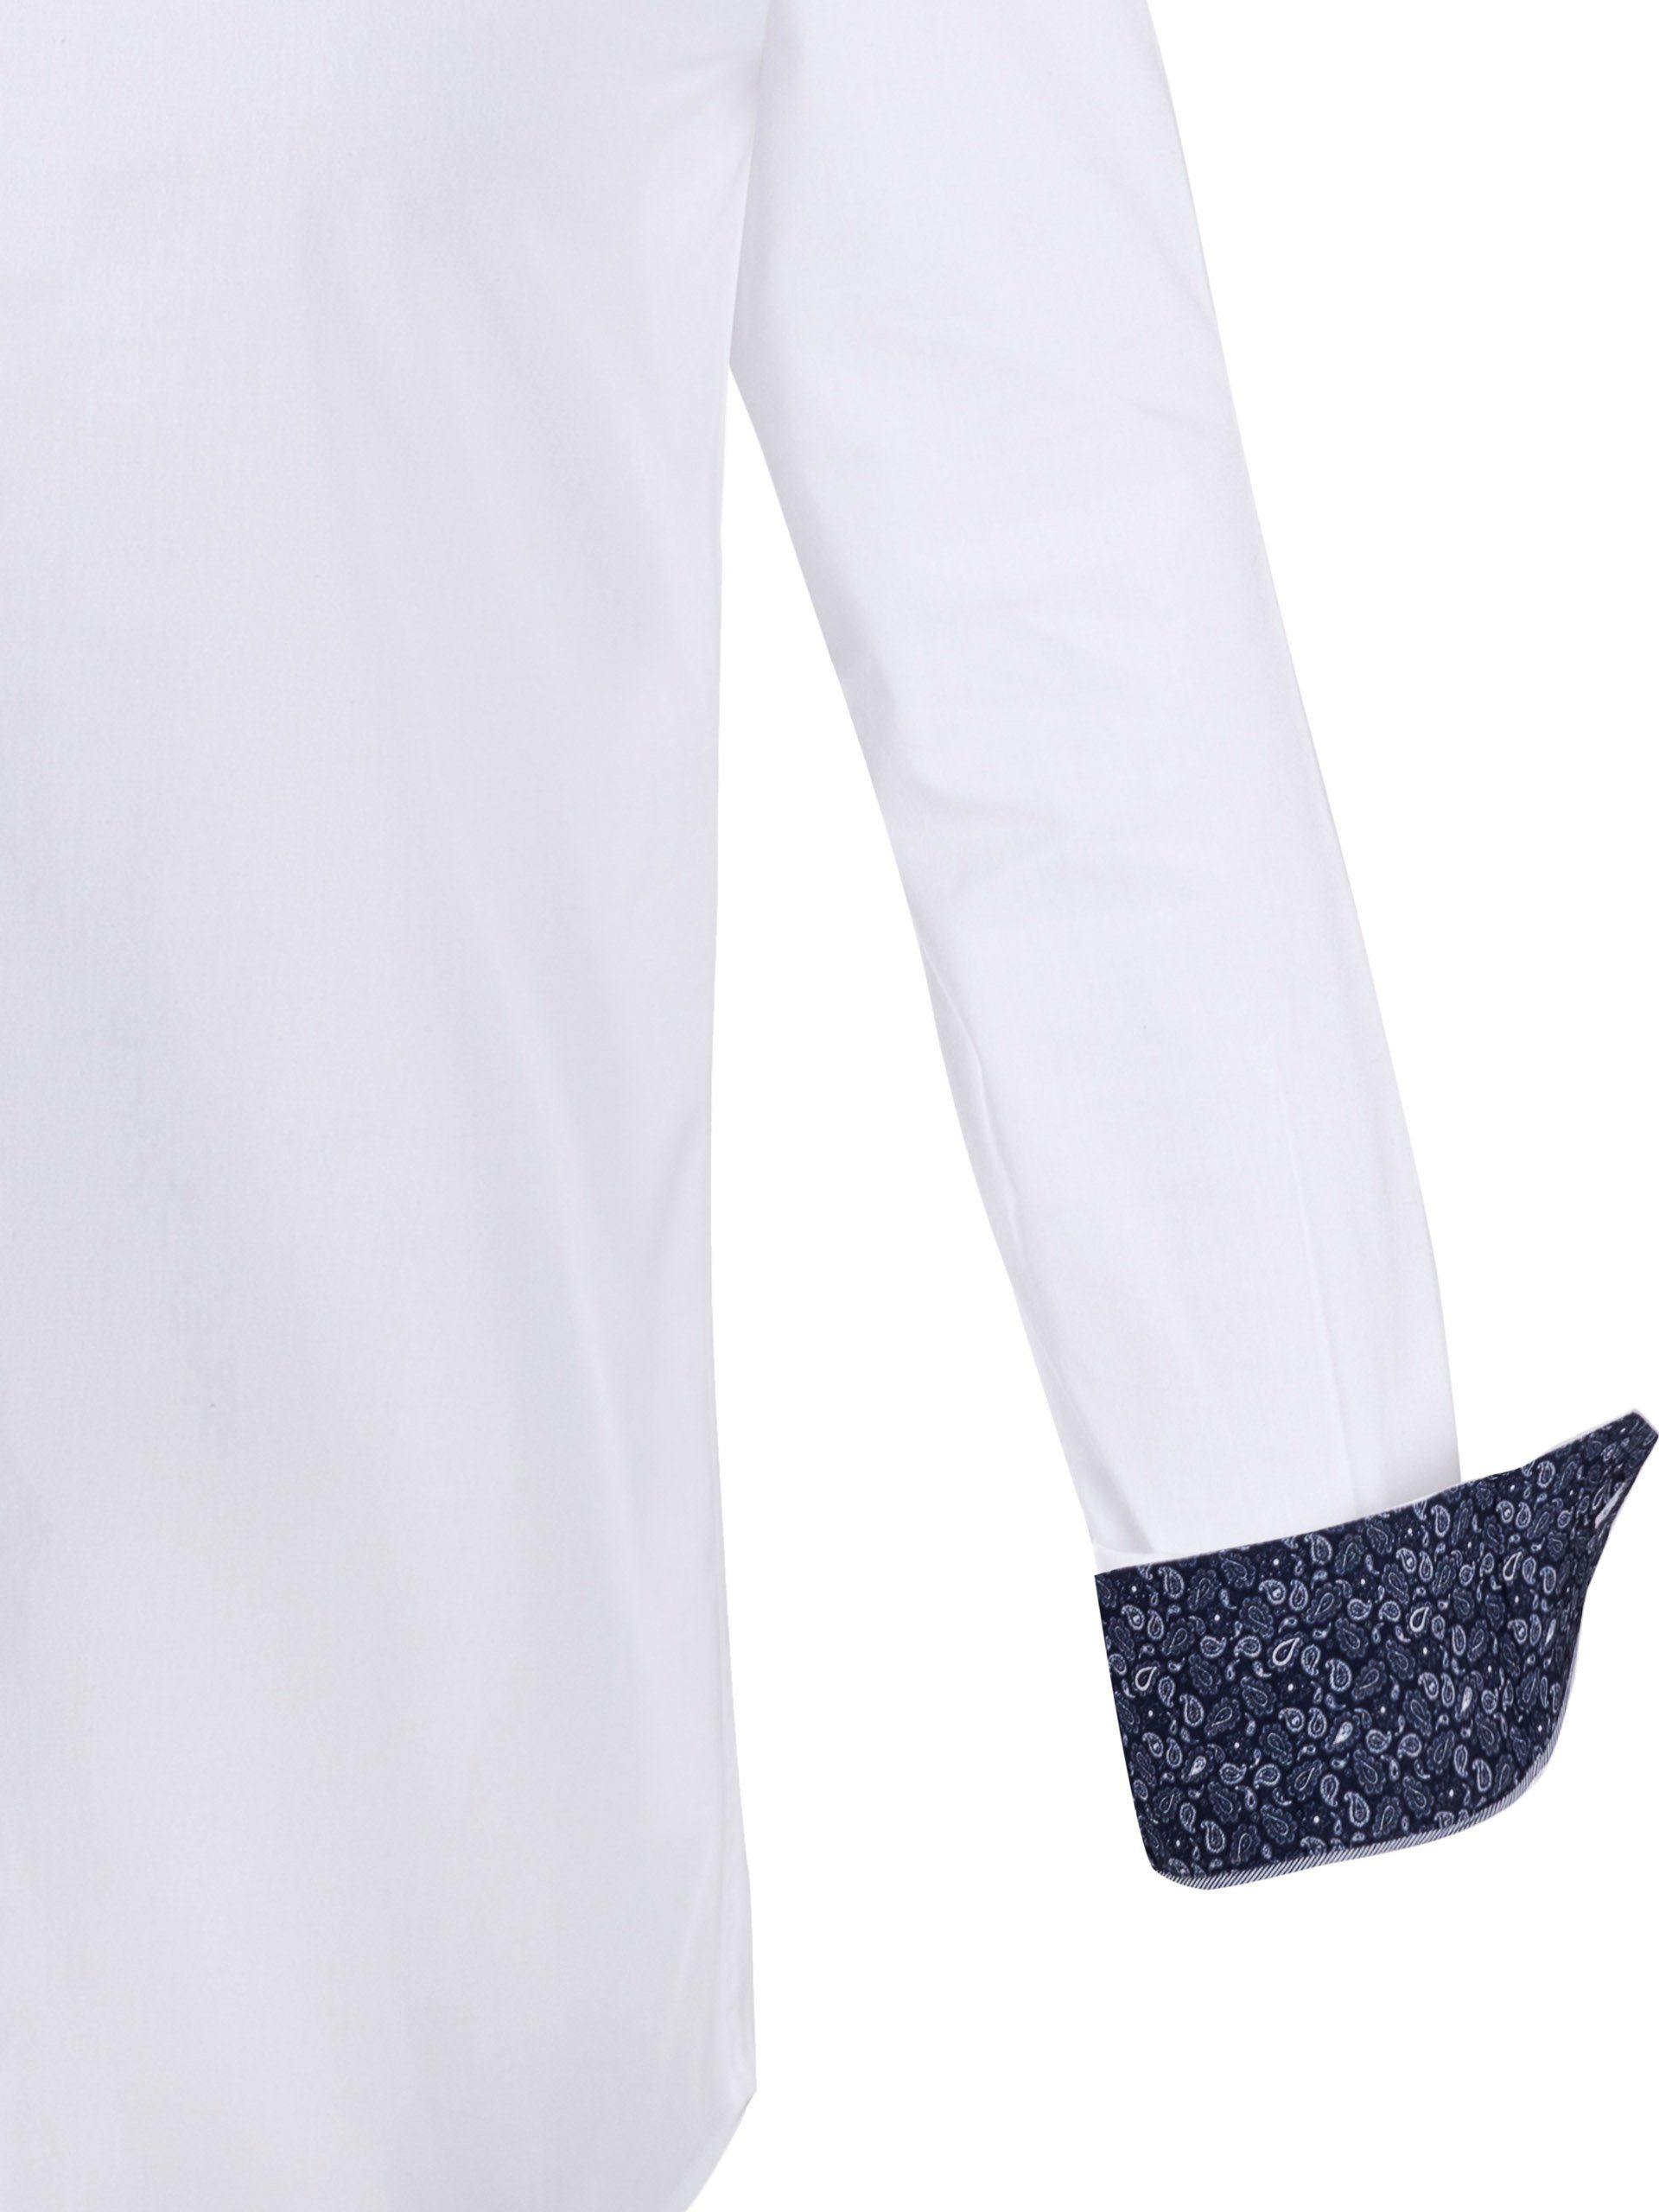 FUCHS Trachtenhemd Hemd Albert Stehkragen mit weiß-marine